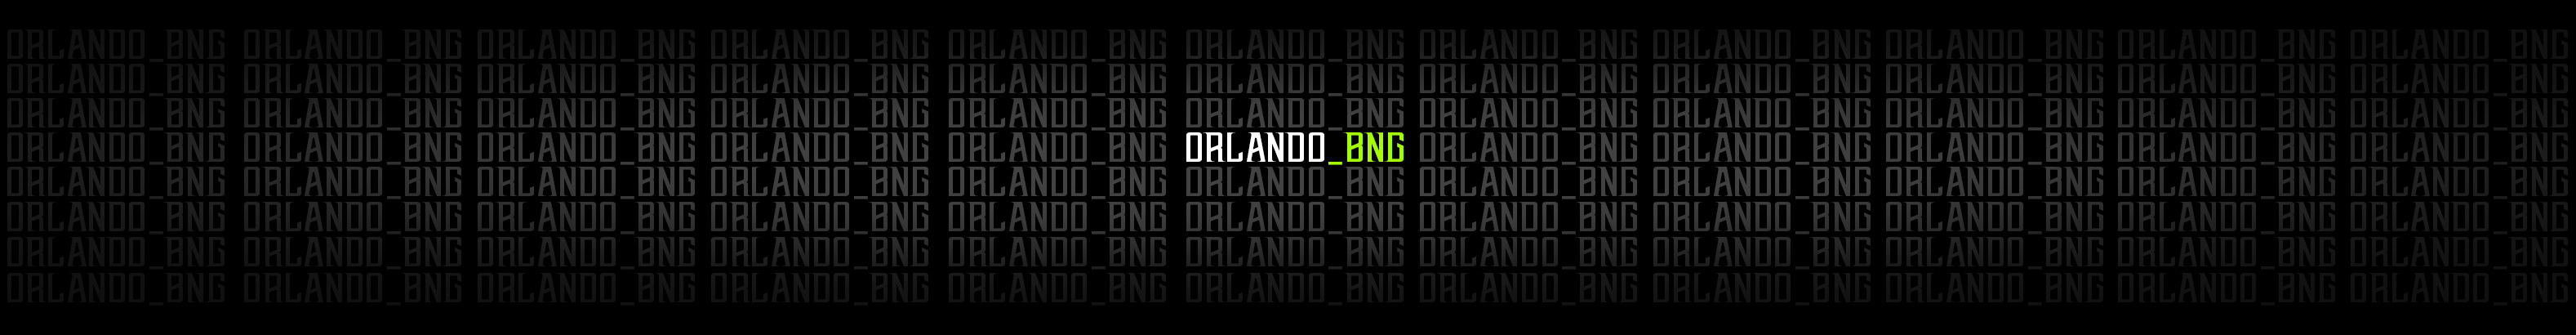 ORLANDO GRAPHICS's profile banner